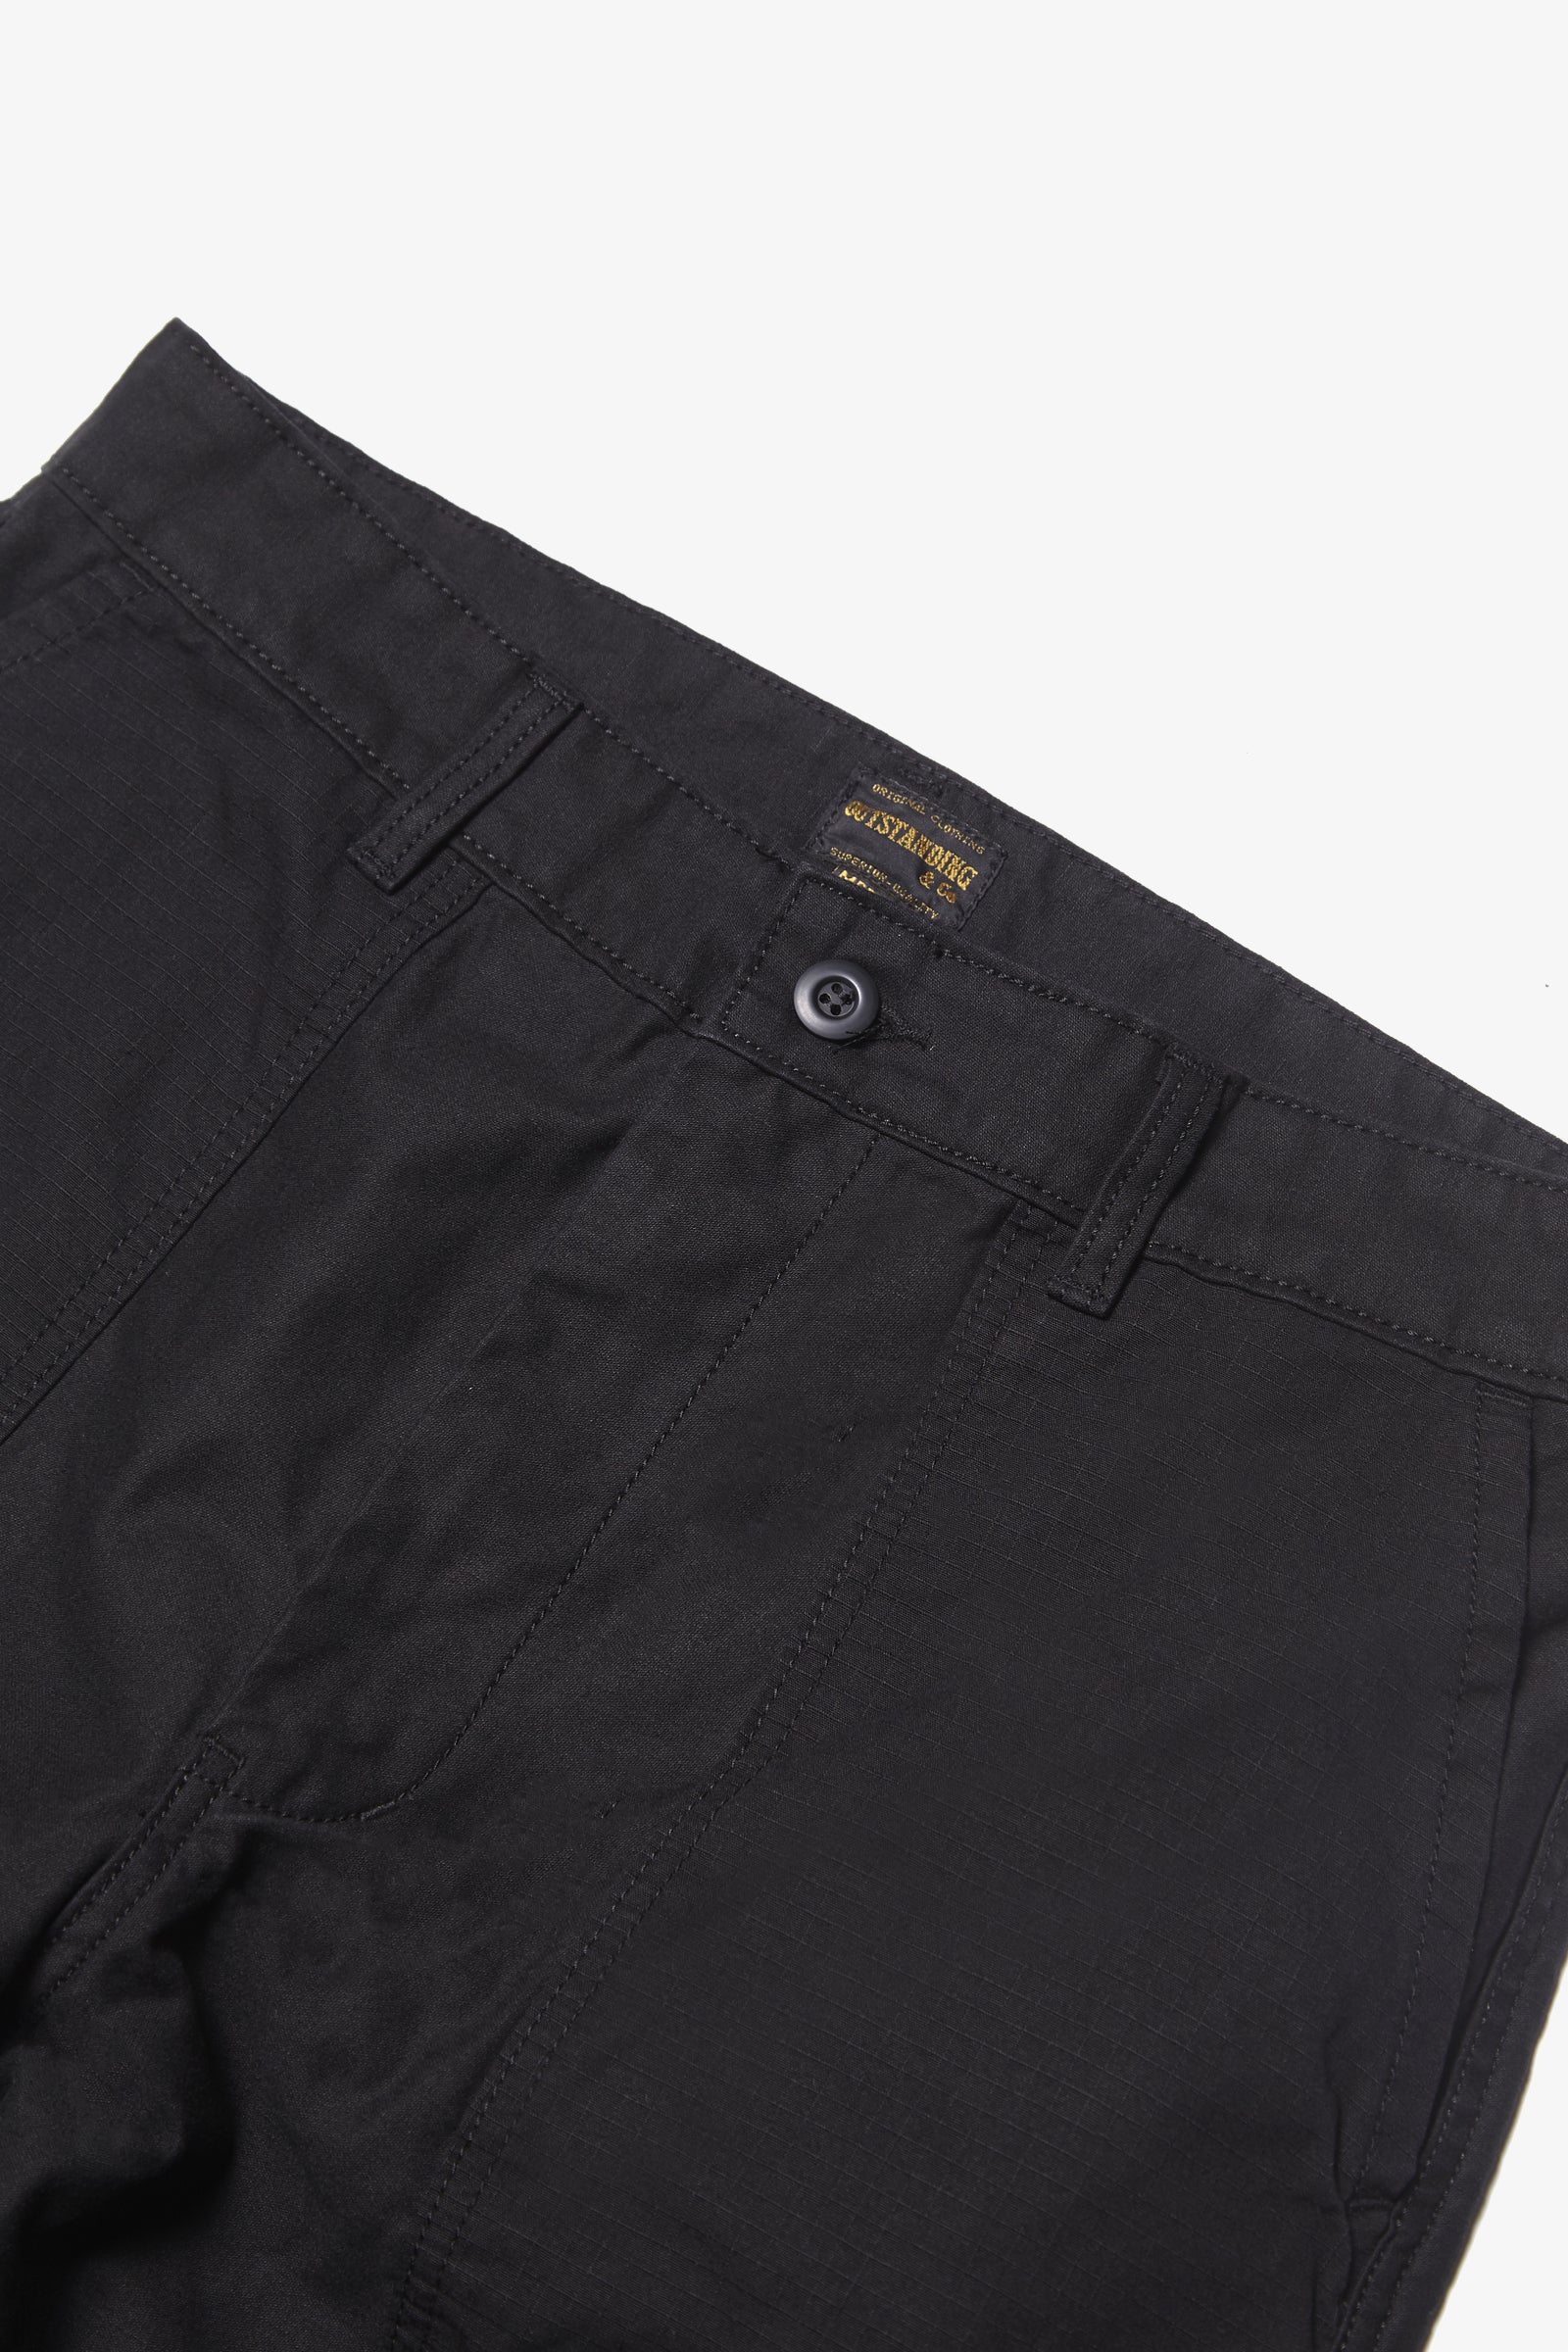 Outstanding & Co. - Fatigue Pocket Pants - Black